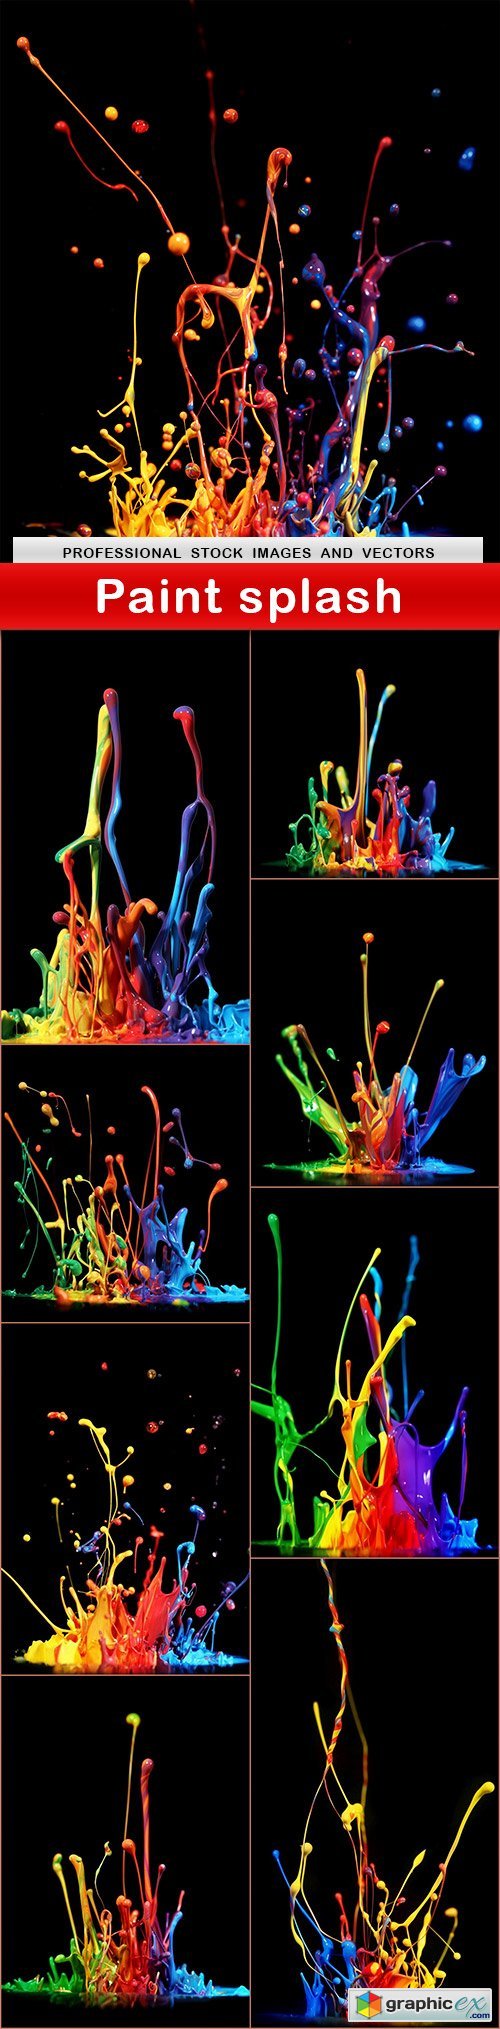 Paint splash - 9 UHQ JPEG